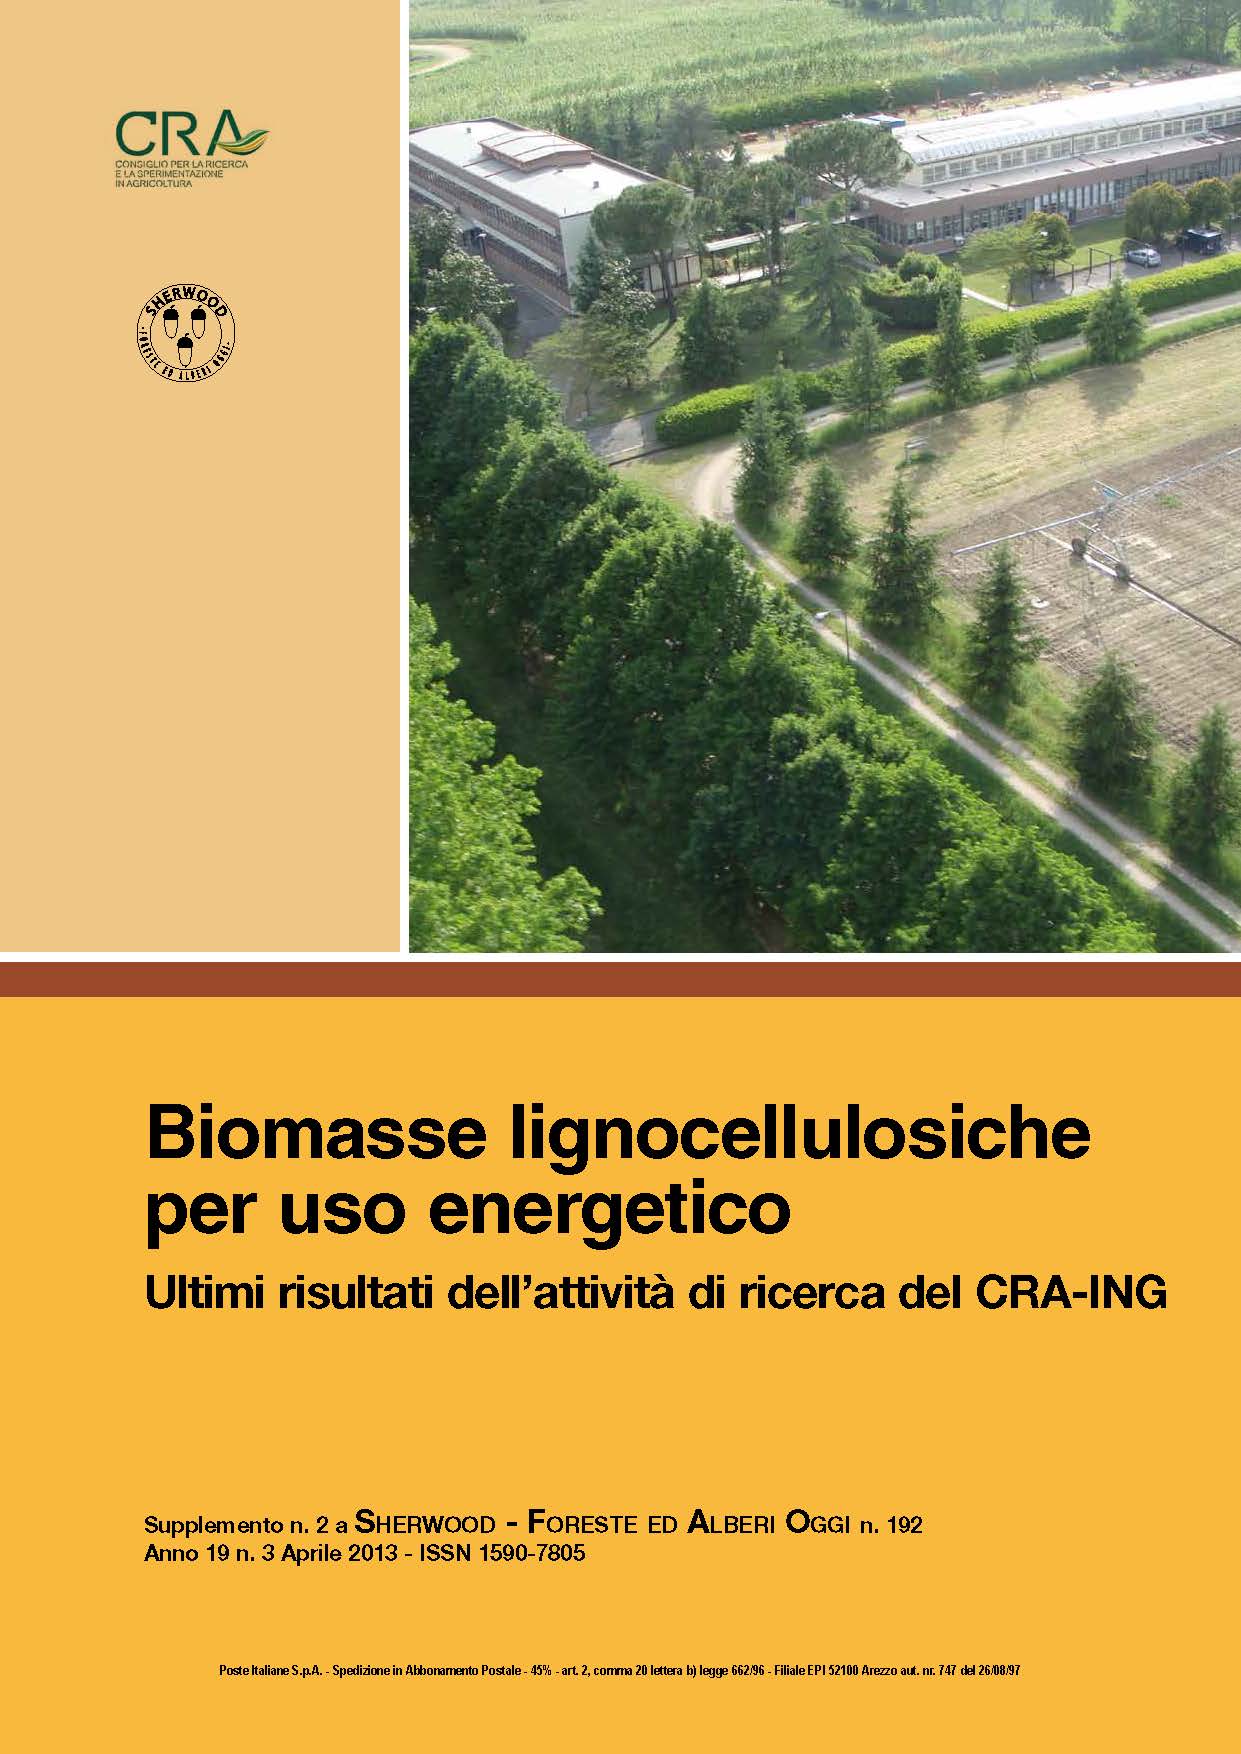 Biomasse lignocellulosiche per uso energetico CRA-ING 2013